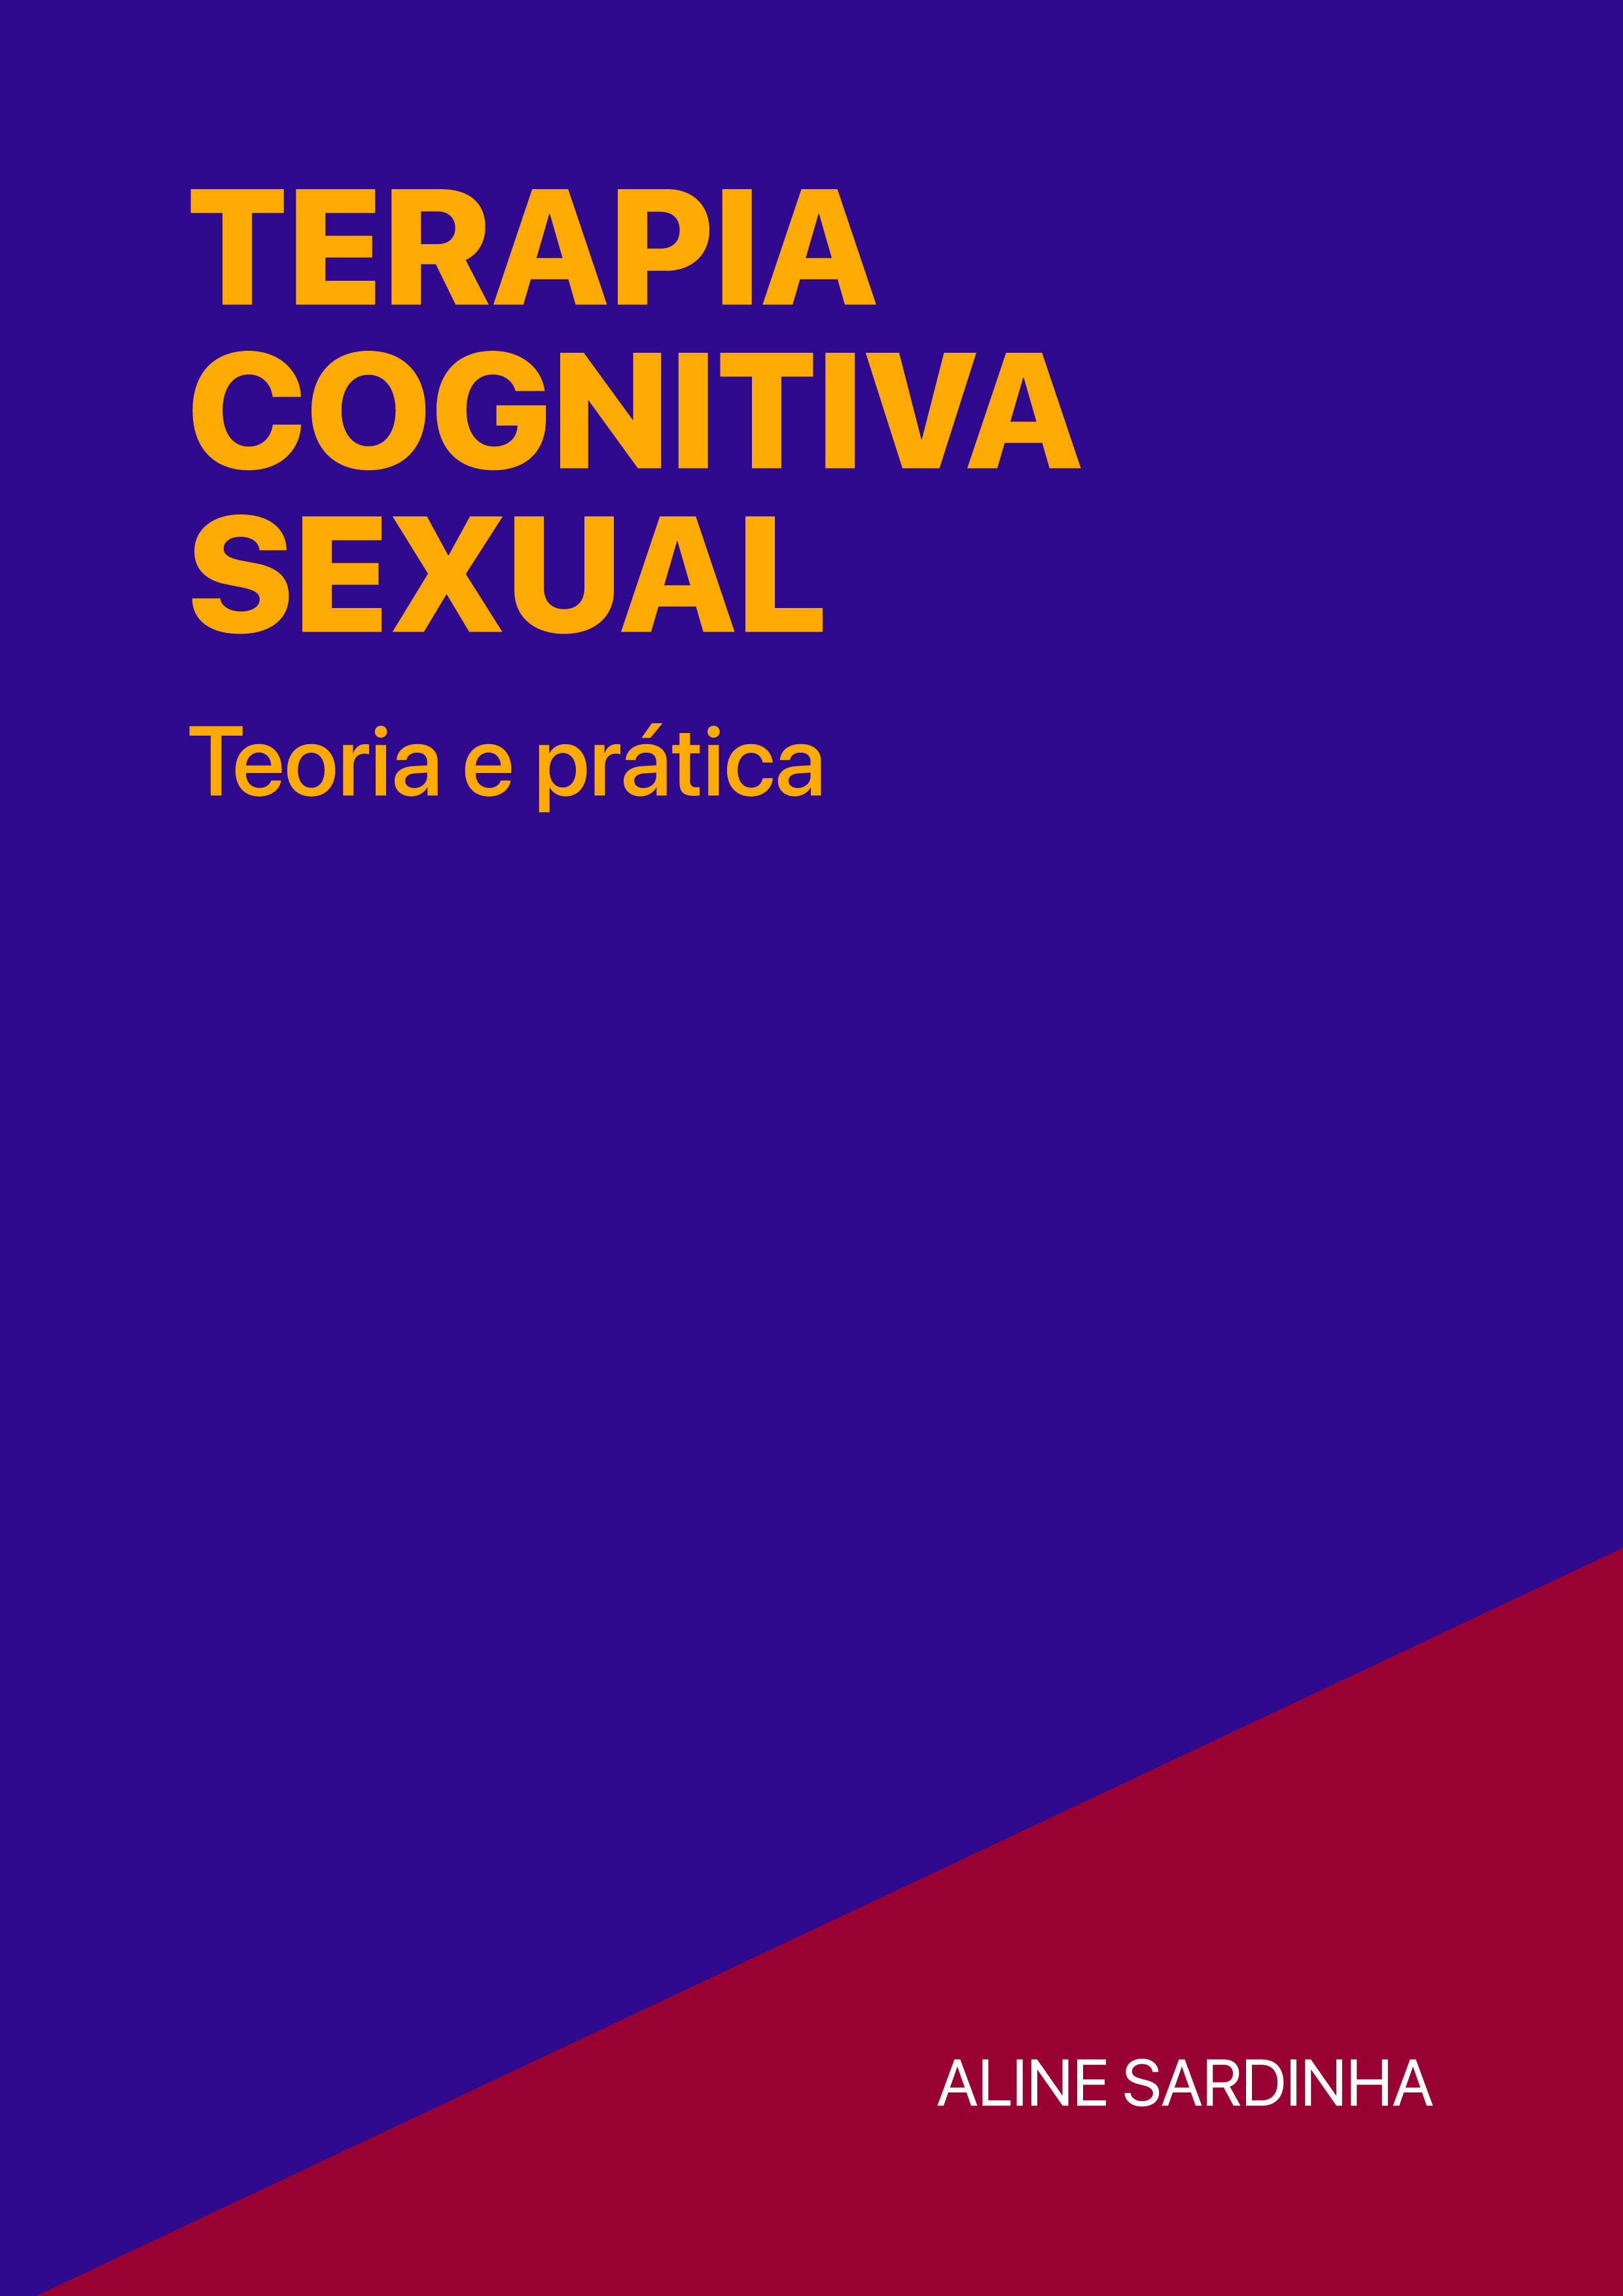 Curso de Formação em Terapia Cognitiva Sexual depoimentos reclame aqui